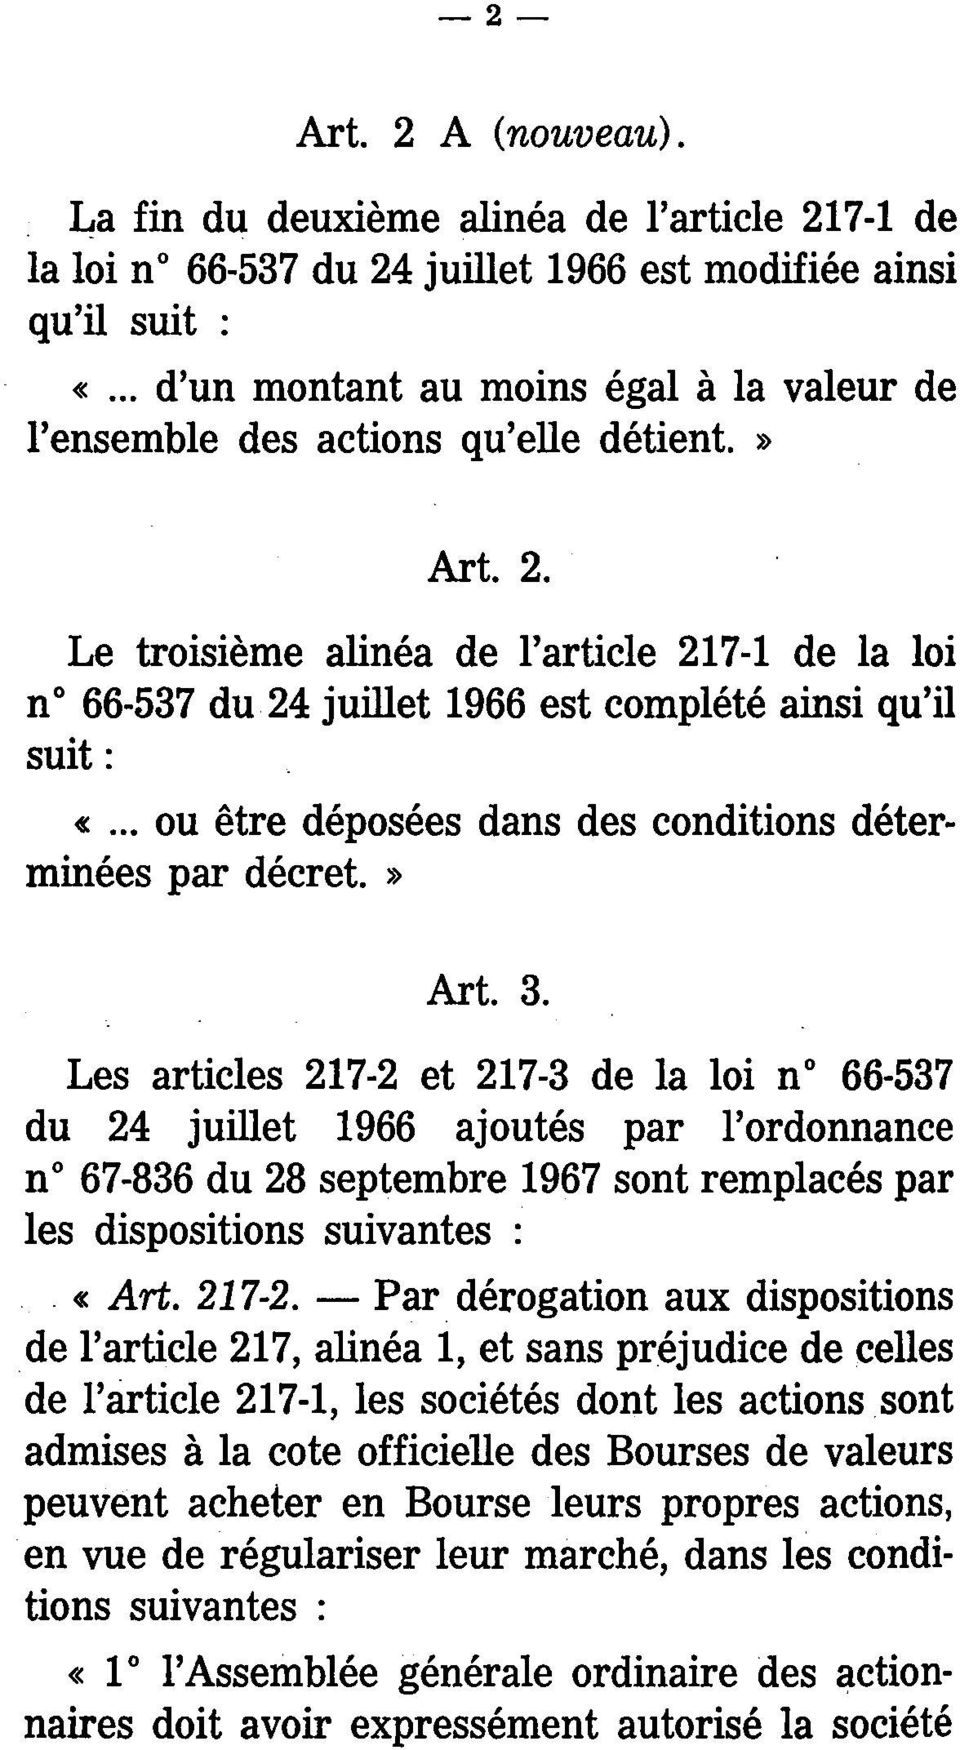 Le troisième alinéa de l'article 217-1 de la loi n 66-537 du 24 juillet 1966 est complété ainsi qu'il suit : «... ou être déposées dans des conditions déterminées par décret.» Art. 3.